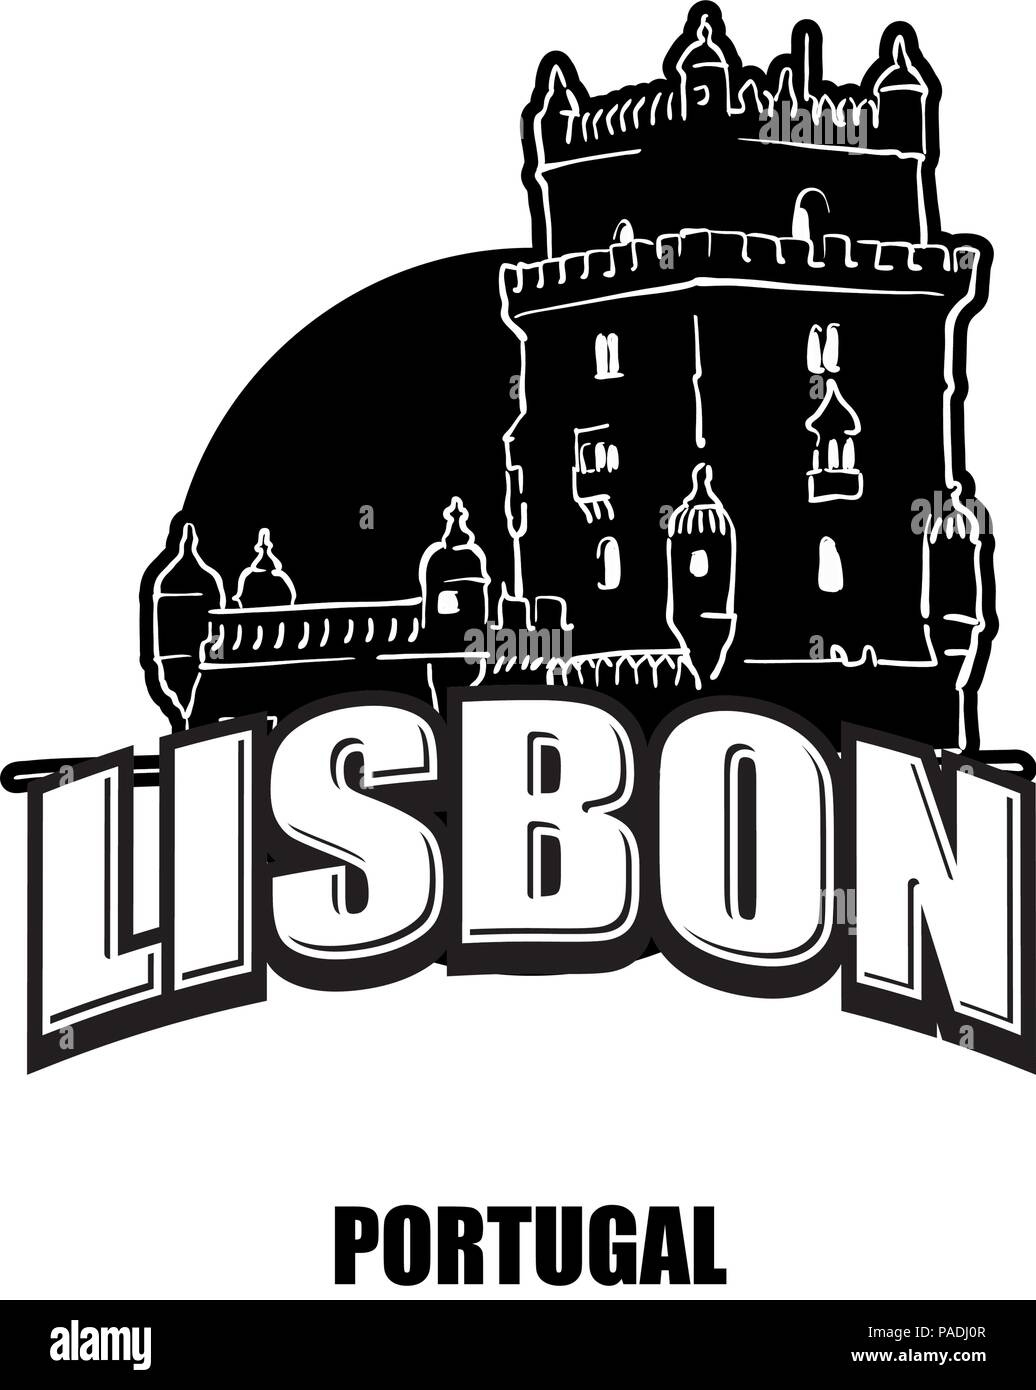 Lisbona, tower, nero e il logo bianco per stampe di alta qualità. Disegnato a mano disegno vettoriale. Illustrazione Vettoriale